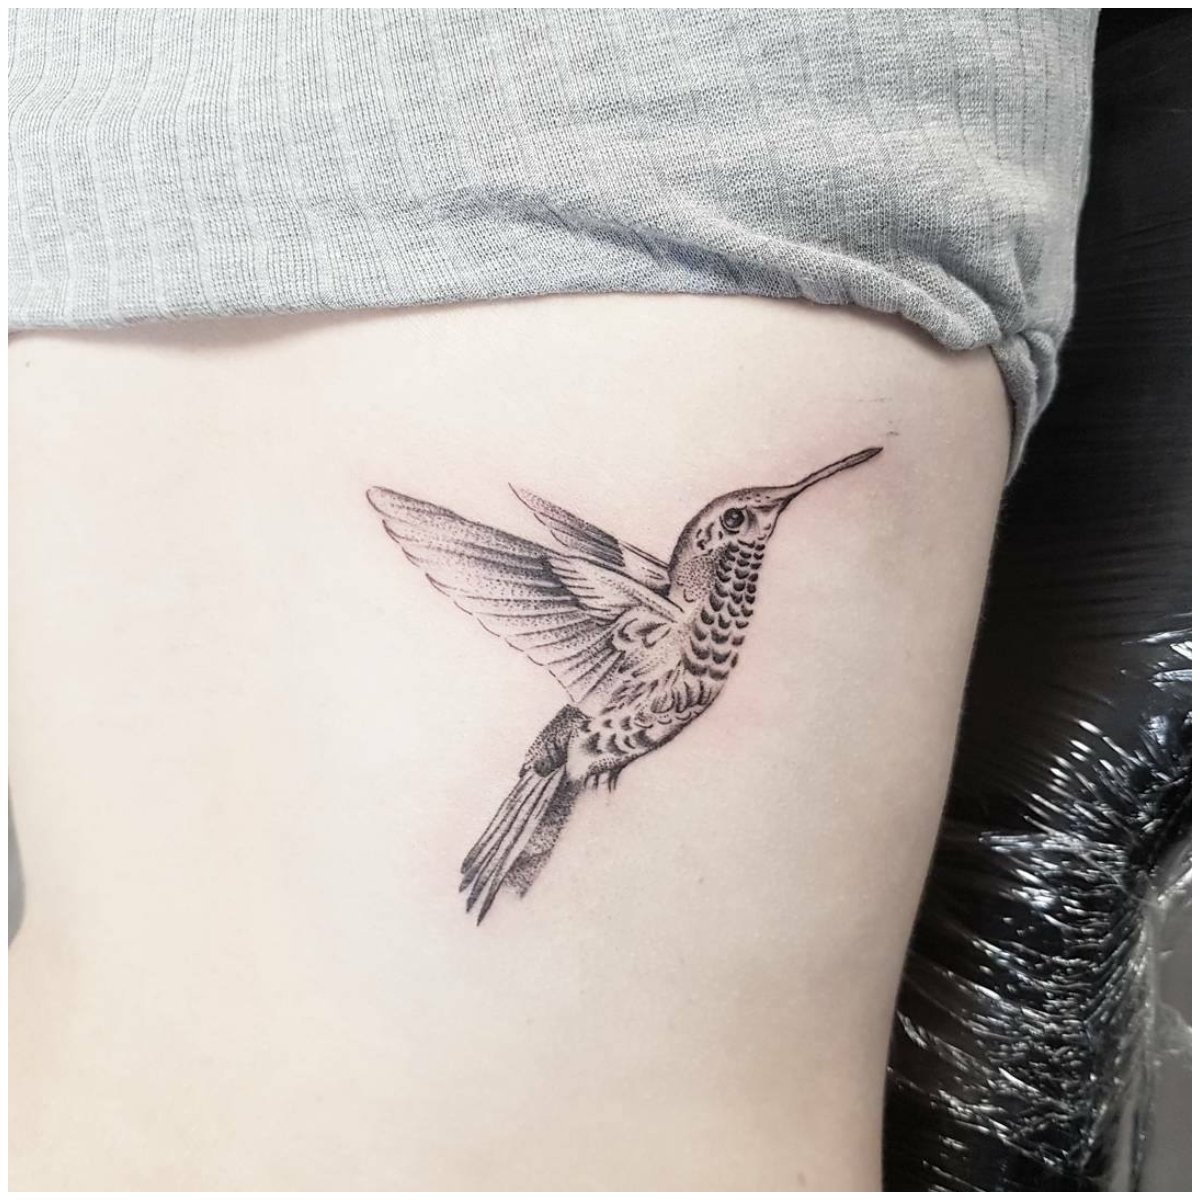 Tattoo uploaded by Elijah Forster • Humming bird • Tattoodo